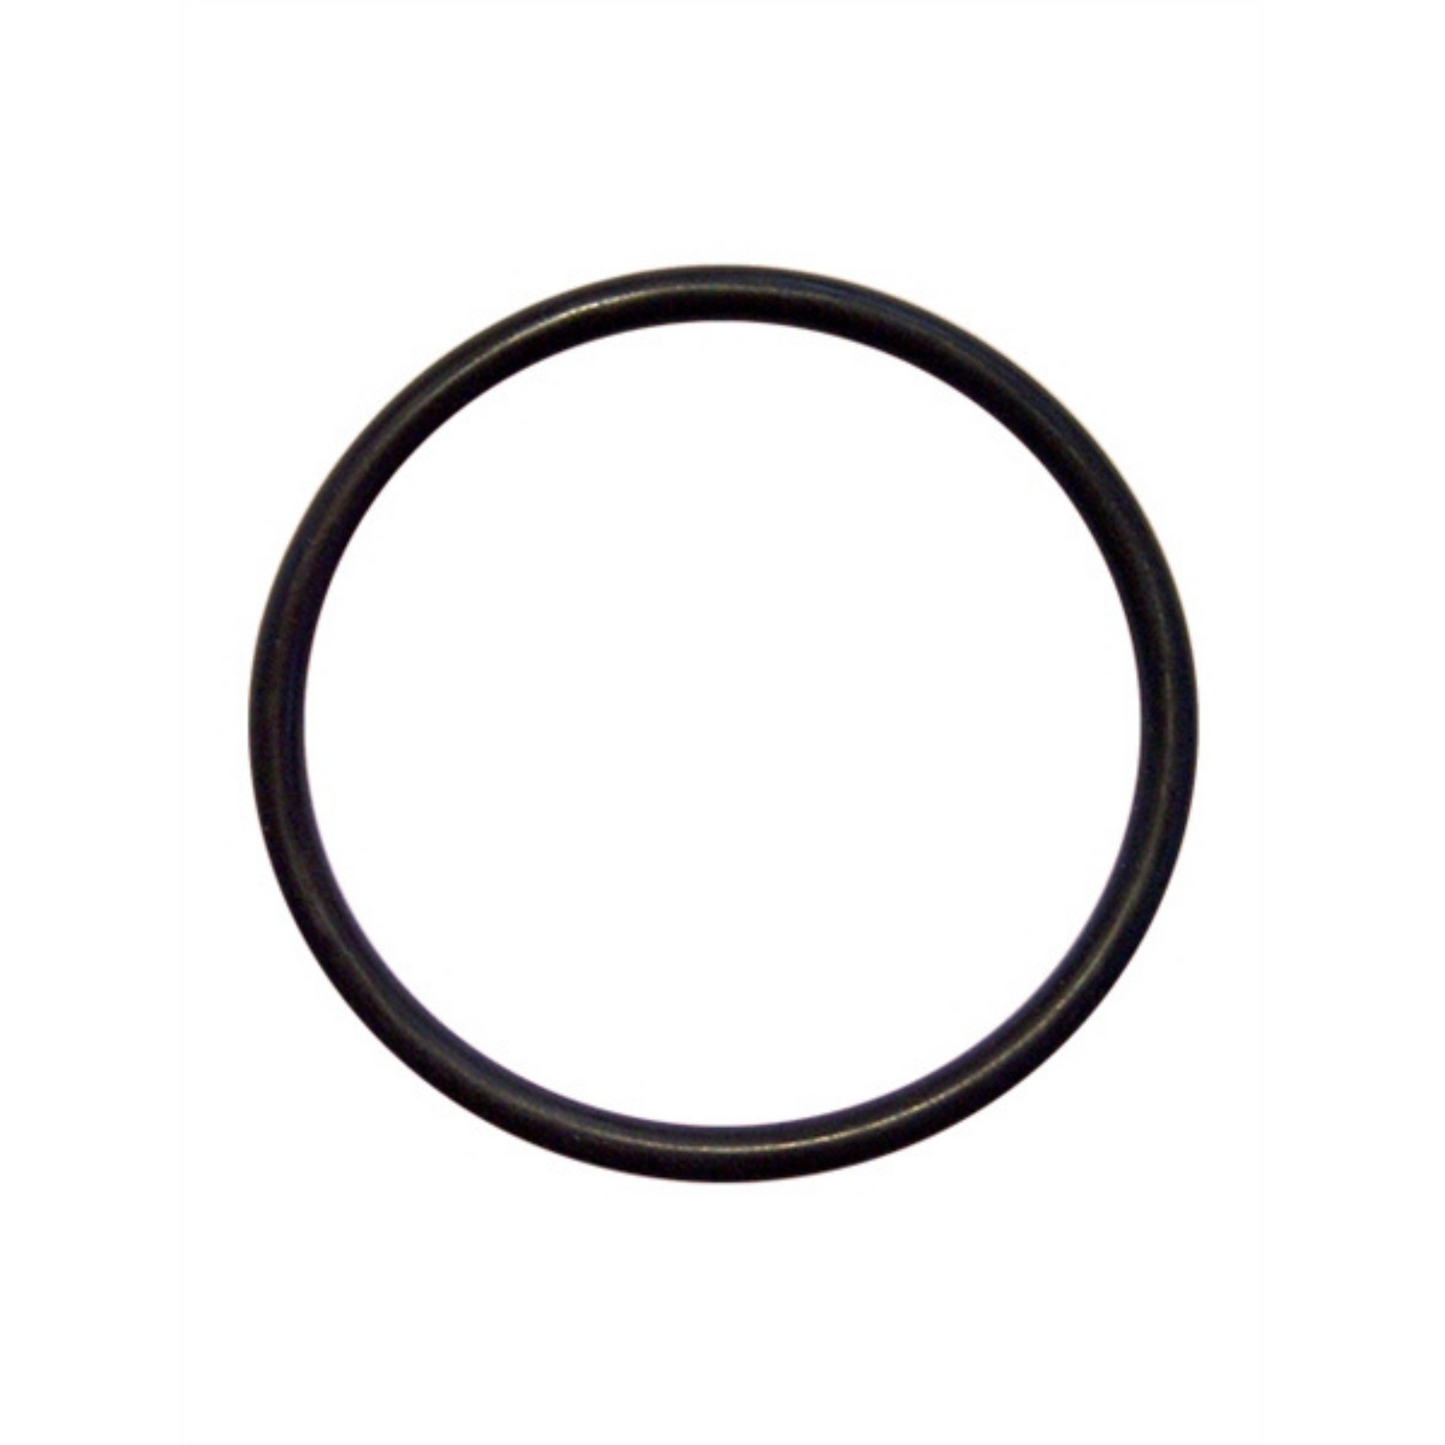 Deze dunne zwarte cock ring met een diameter van 40 mm, van Mister B en te koop bij Flavourez.